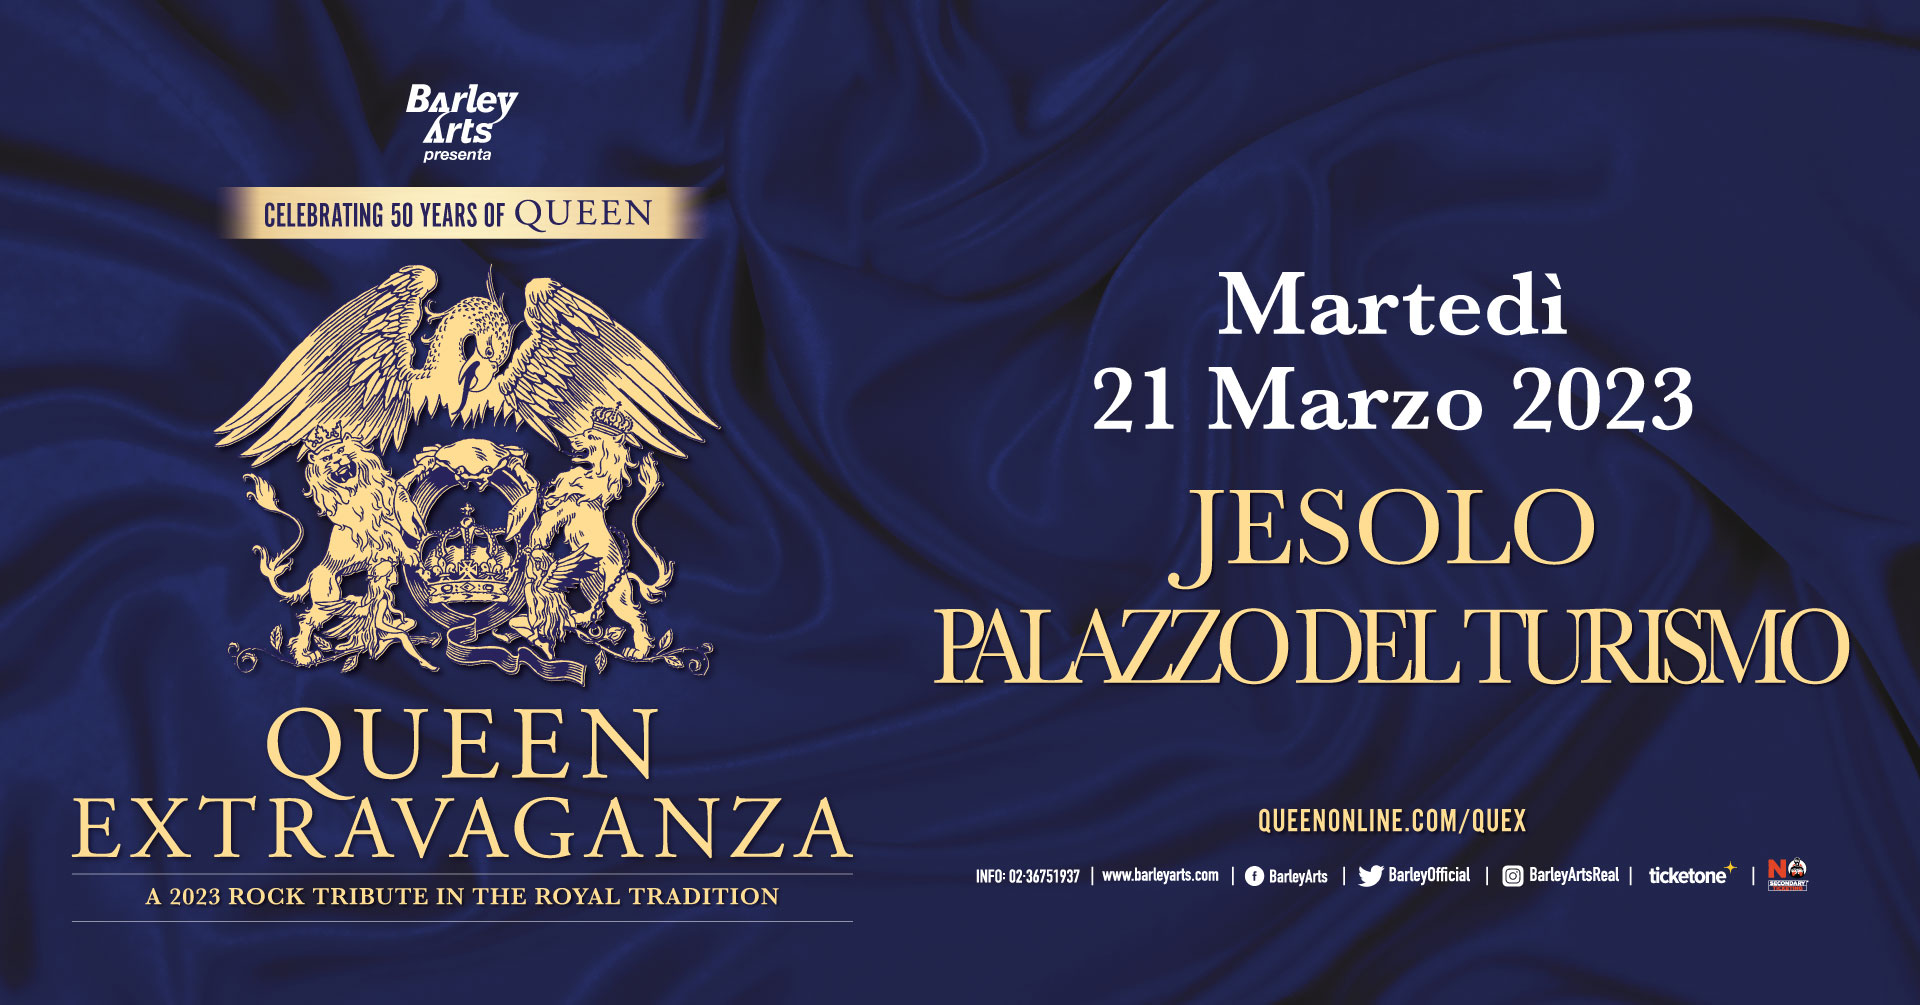 Queen Extravaganza Italy, Jesolo